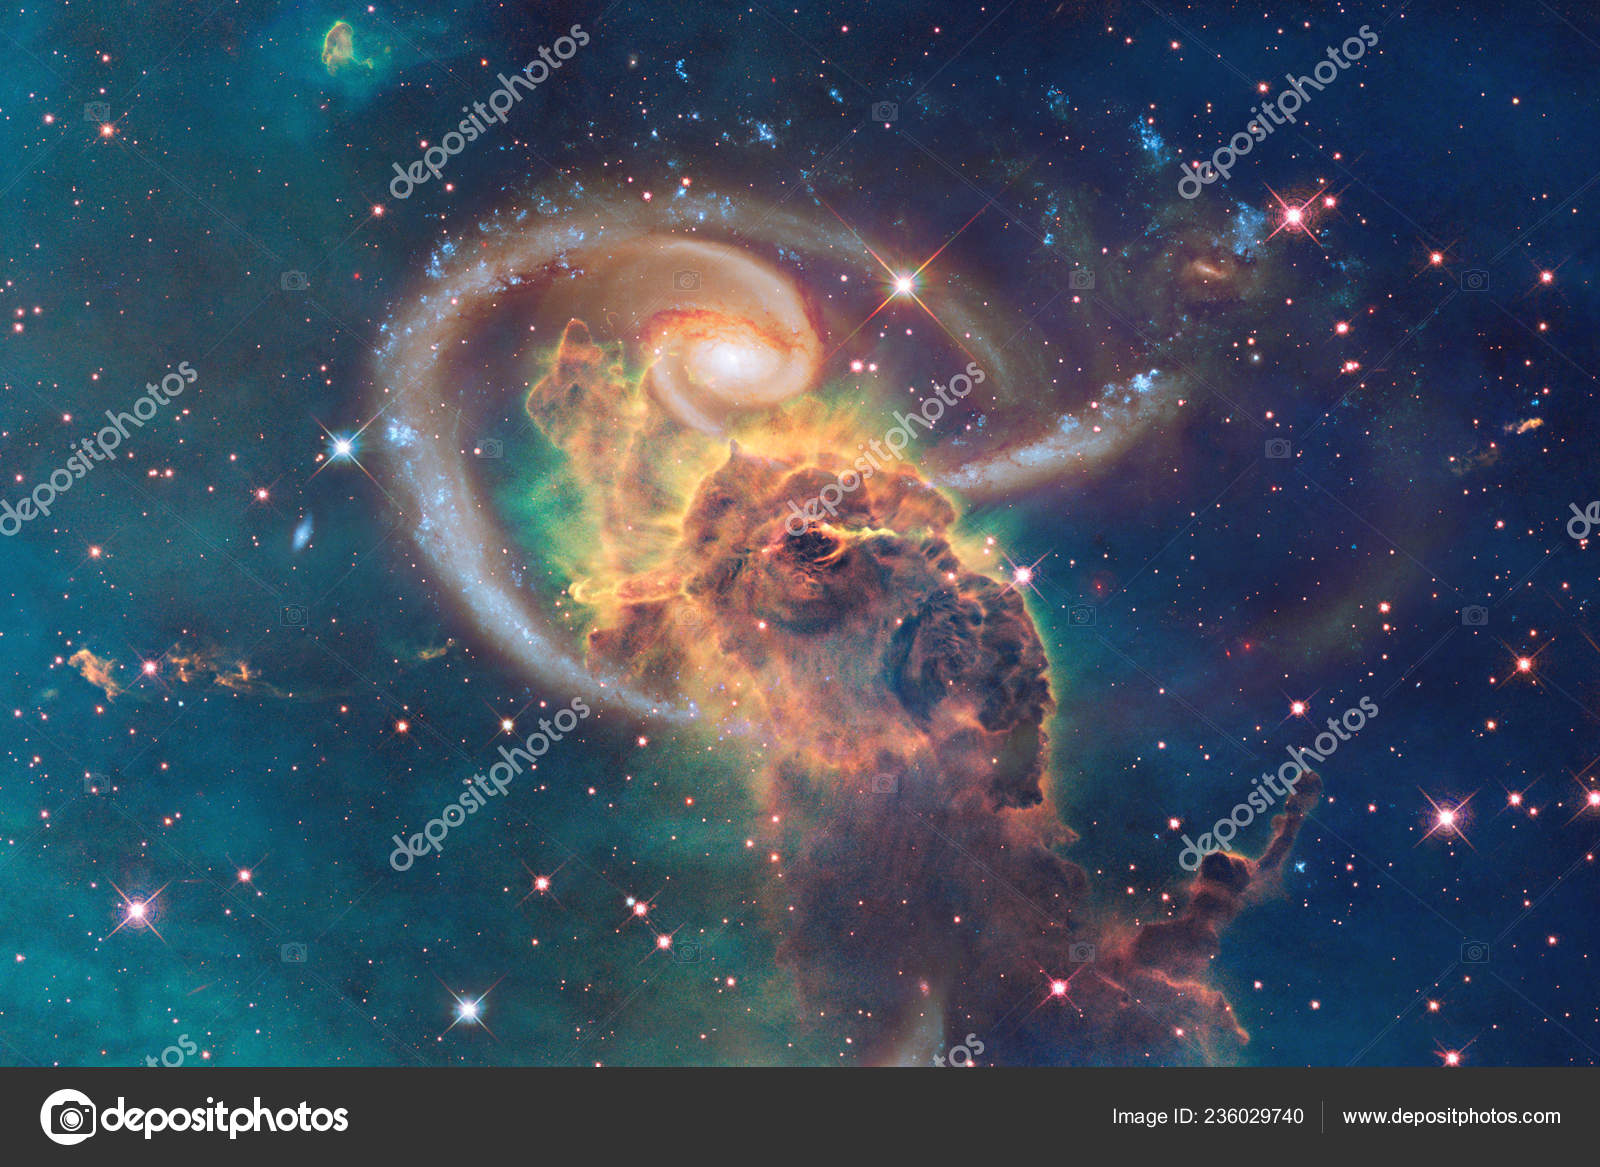 深宇宙のどこかで信じられないほど美しい銀河 空想科学小説の壁紙 Nasa から提供されたこのイメージの要素 ストック写真 C Outer Space